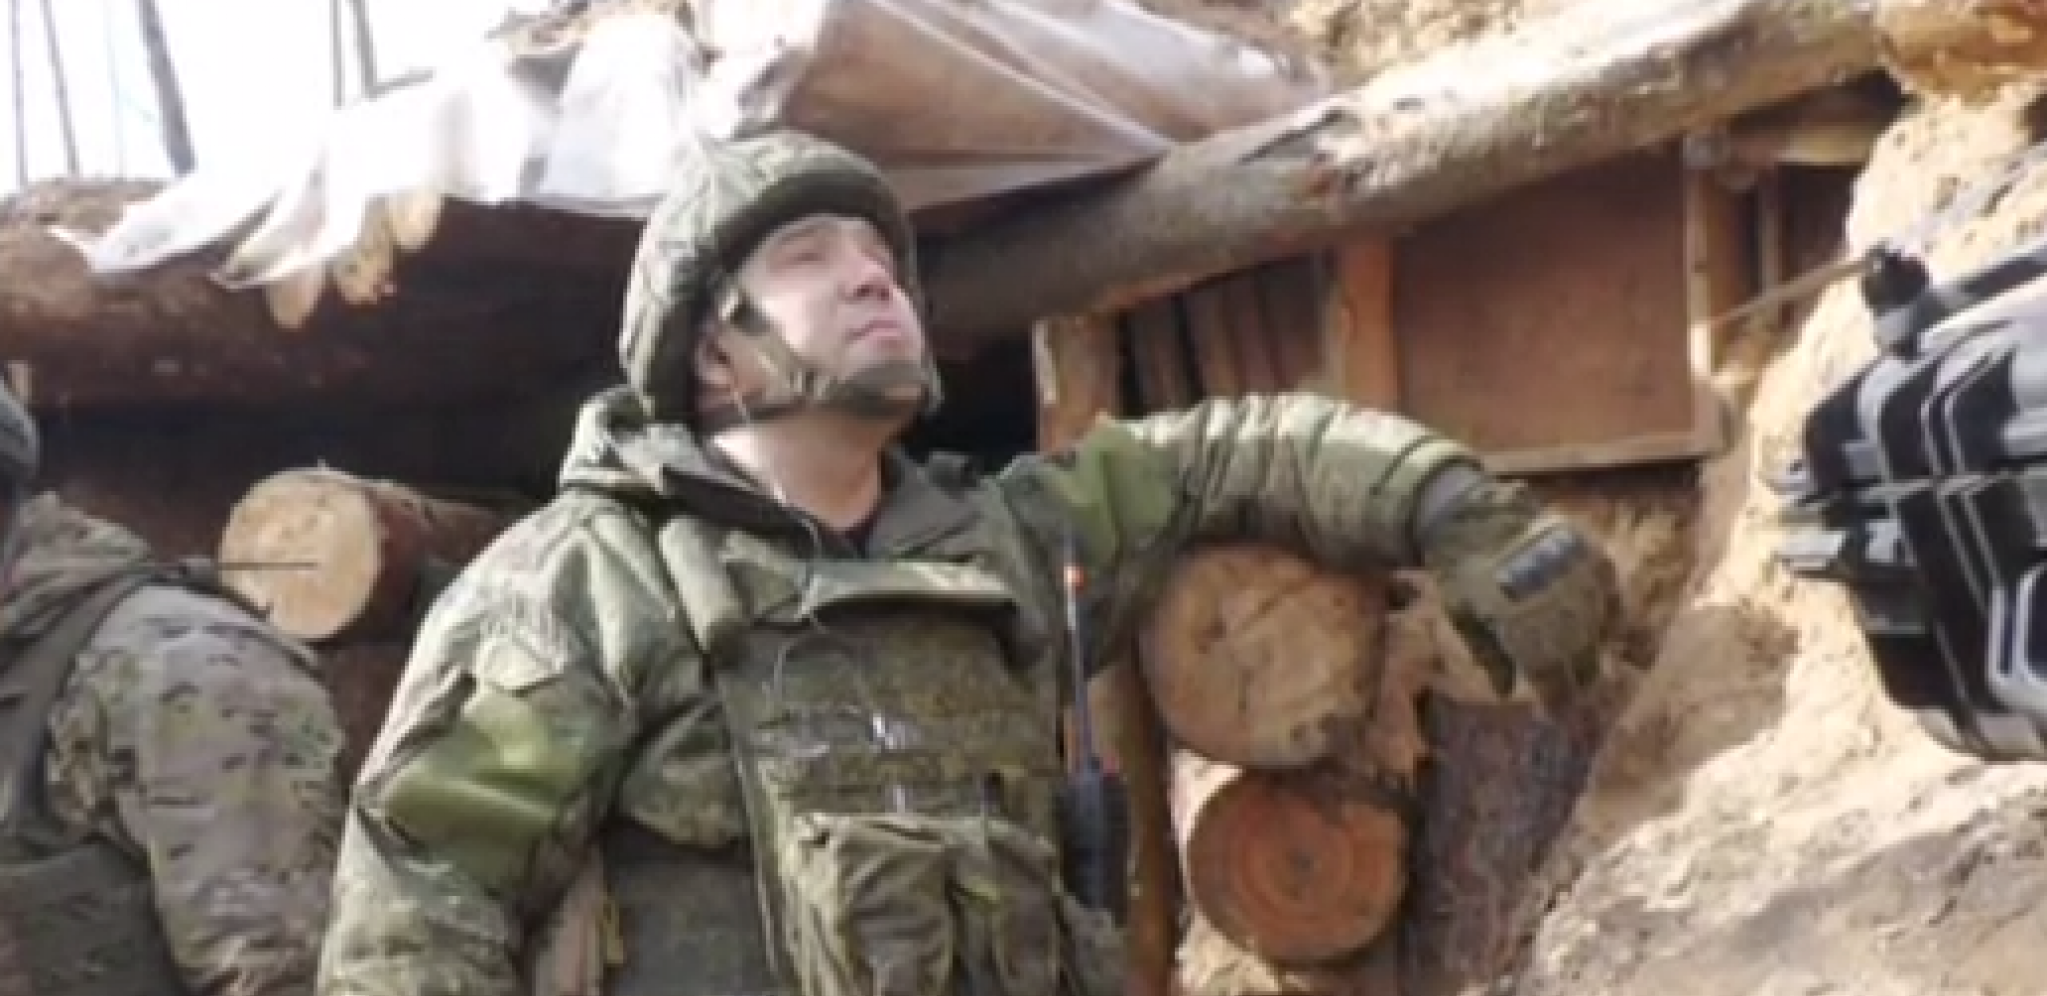 KO JE BIO POGINULI RUSKI PUKOVNIK MAKAROV? Rusi ga nazivaju herojem (VIDEO)